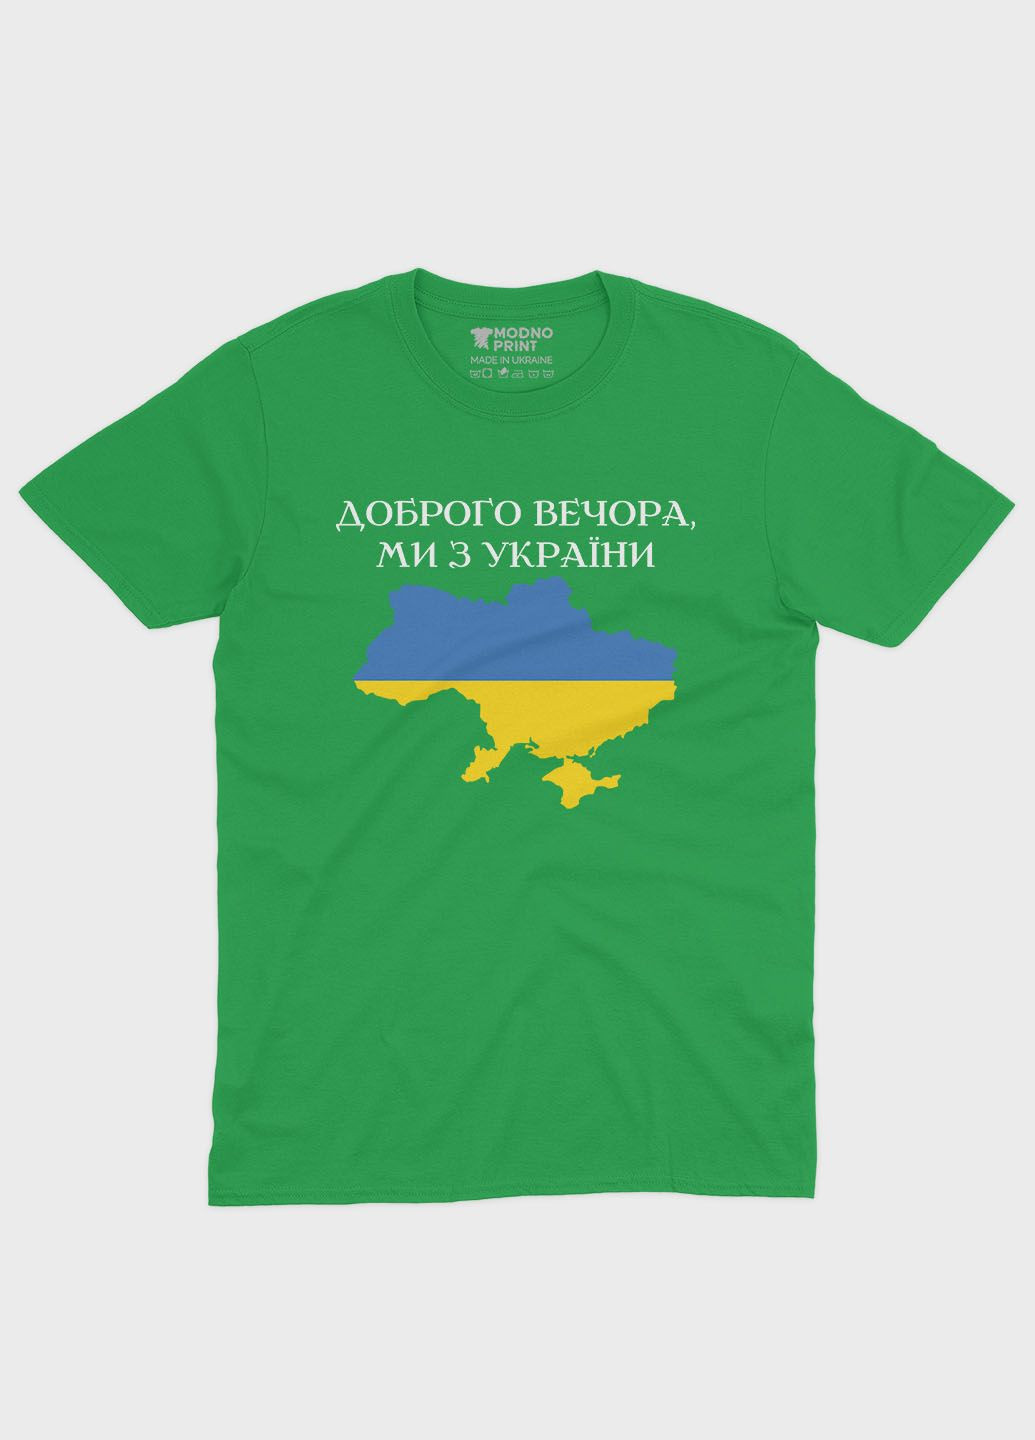 Зелена демісезонна футболка для хлопчика з патріотичним принтом доброго вечора (ts001-2-keg-005-1-048-b) Modno